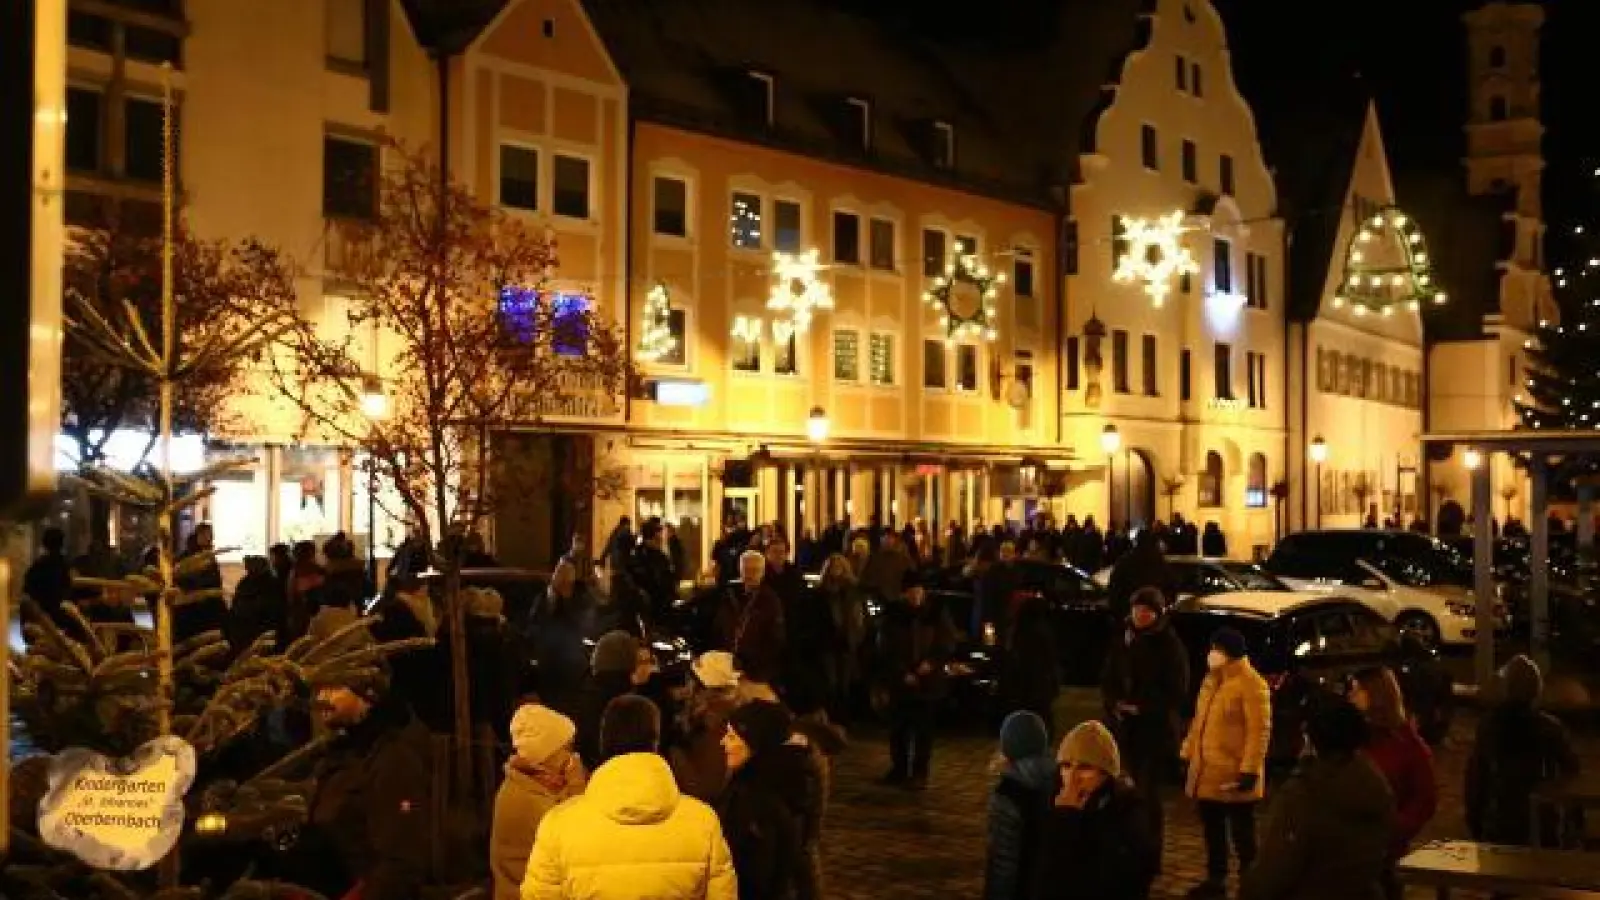 Knapp 300 Menschen sind auch am Wochenende in Aichach gegen die Corona-Politik Bayerns und der Bundesrepublik auf die Straße gegangen. Sie nennen ihre unangemeldeten Demonstrationen schlicht „Spaziergang”. Ein Redner, ein Anführer oder eine Kundgebung fehlen.